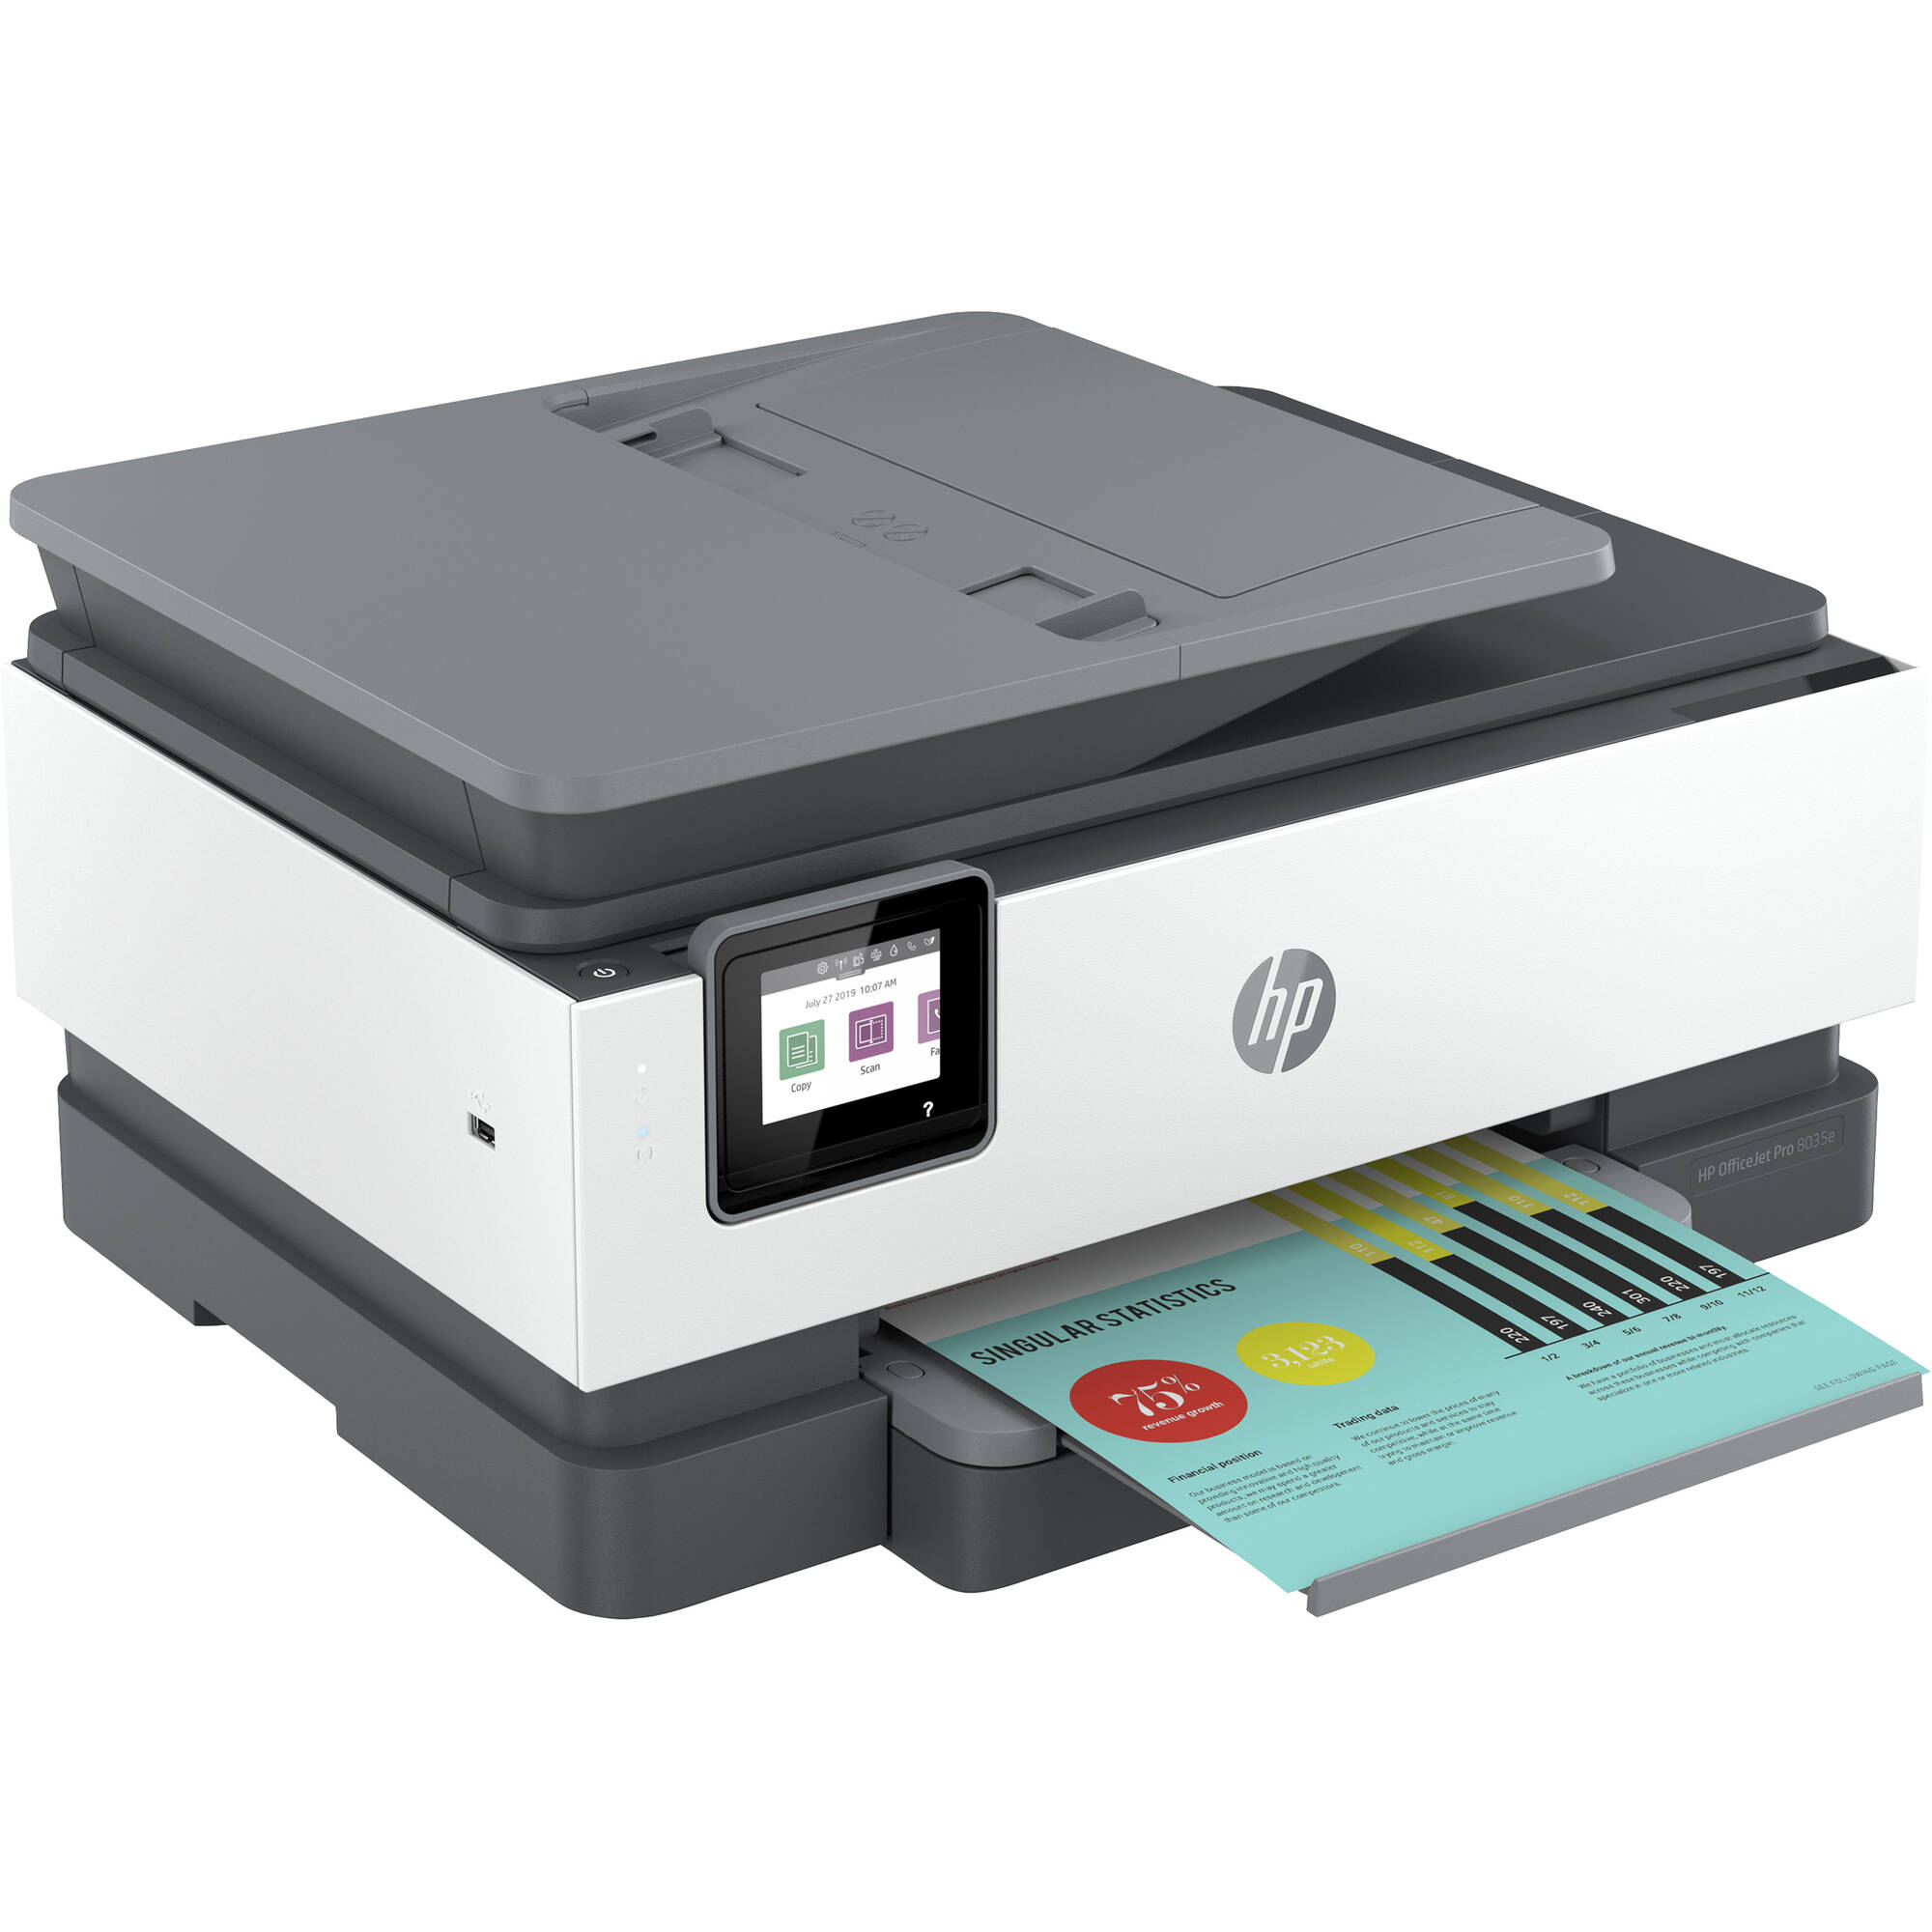 Impresora multifunción HP OfficeJet Pro 8035e con 6 meses de tinta gratis a través de HP+ (basalto)